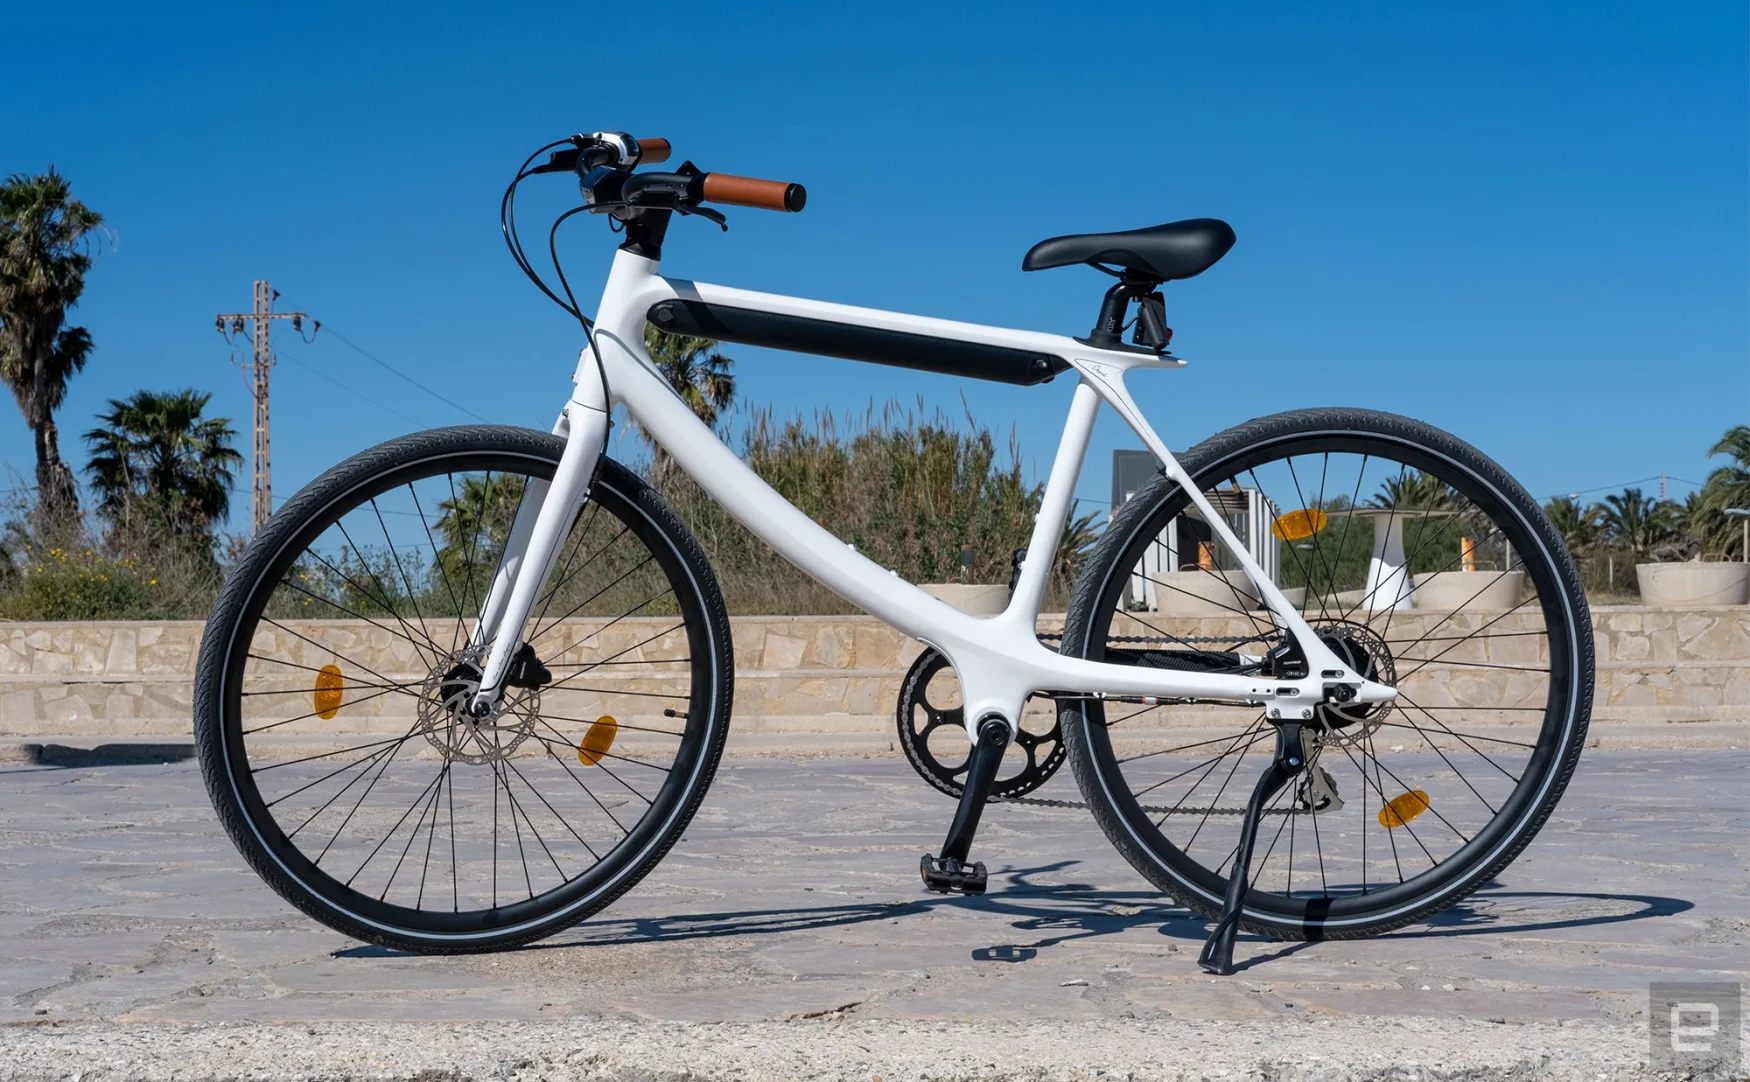 Το ηλεκτρονικό ποδήλατο Chord από την Urtopia στοχεύει να συνδυάσει τεχνολογία και στυλ